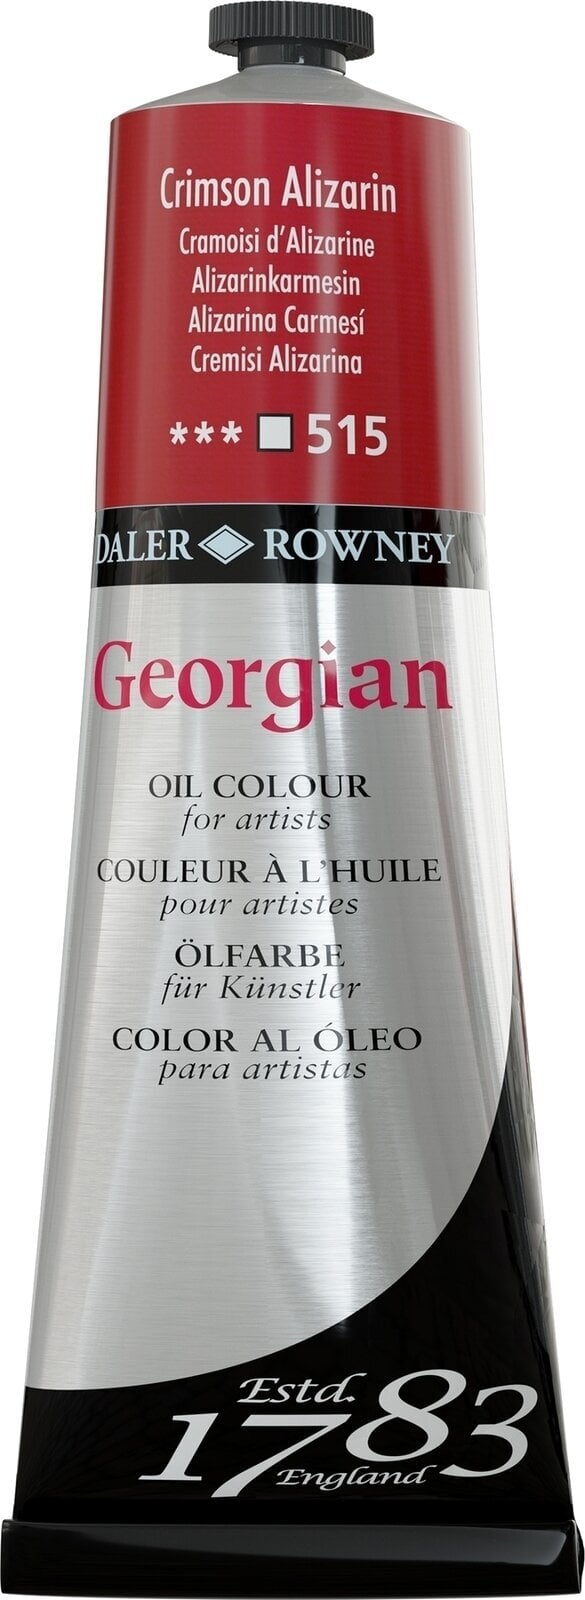 Χρώμα λαδιού Daler Rowney Georgian Λαδομπογιά Crimson Alizarin 225 ml 1 τεμ.